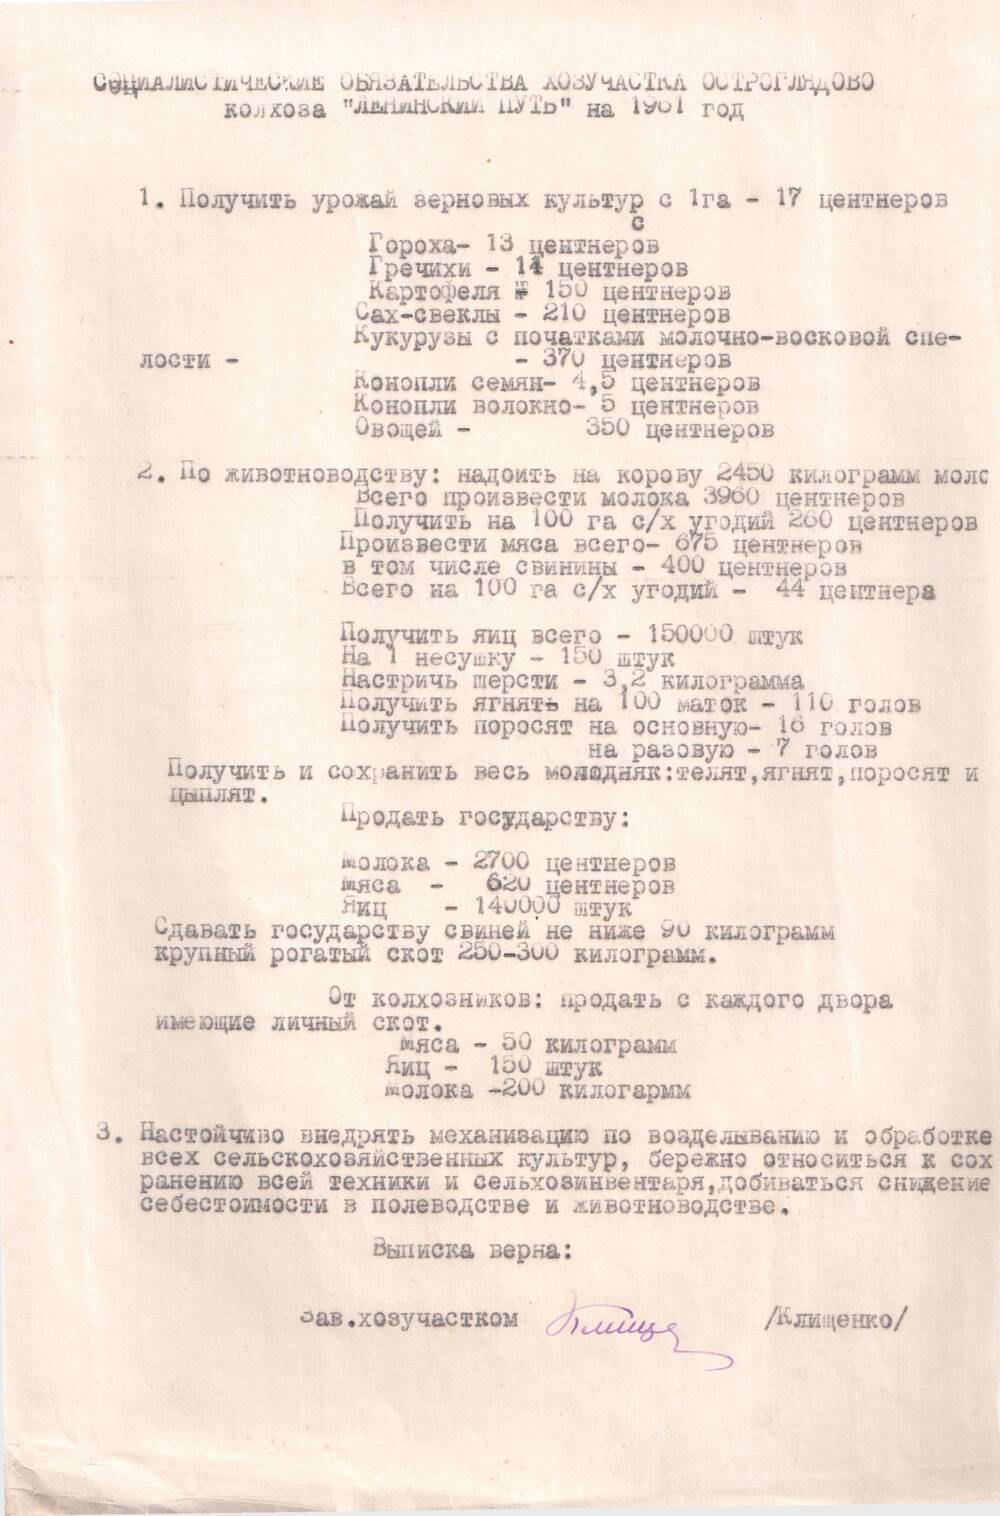 Соцобязательство колхоза «Ленинский путь» Стародубского района на 1961 г., 2 листа